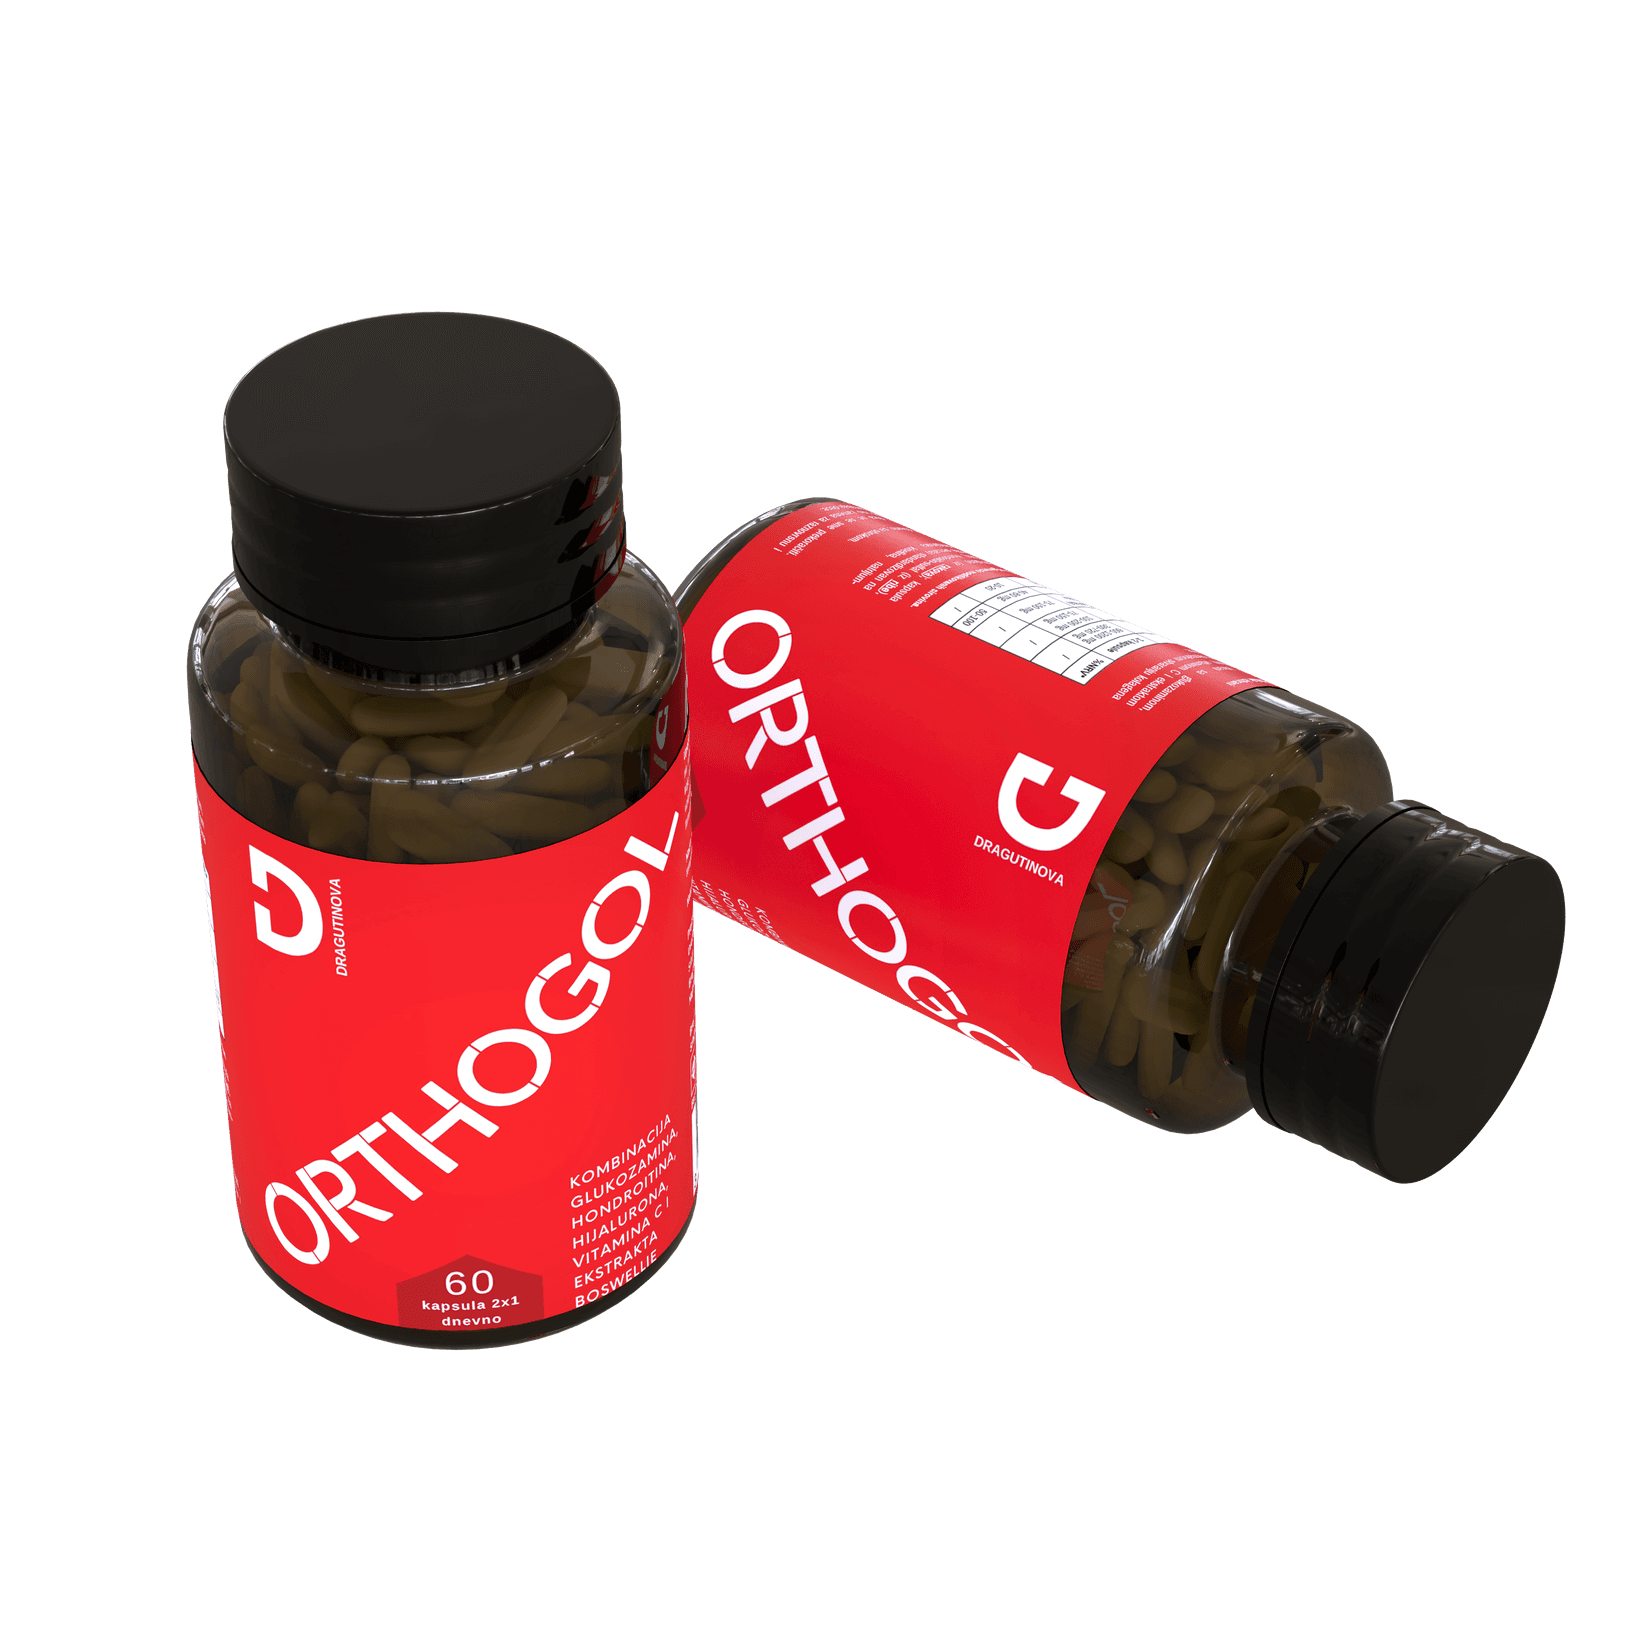 ORTHOGOL Dodatak ishrani - suplement za zdravlje zglobova 60 kapsula